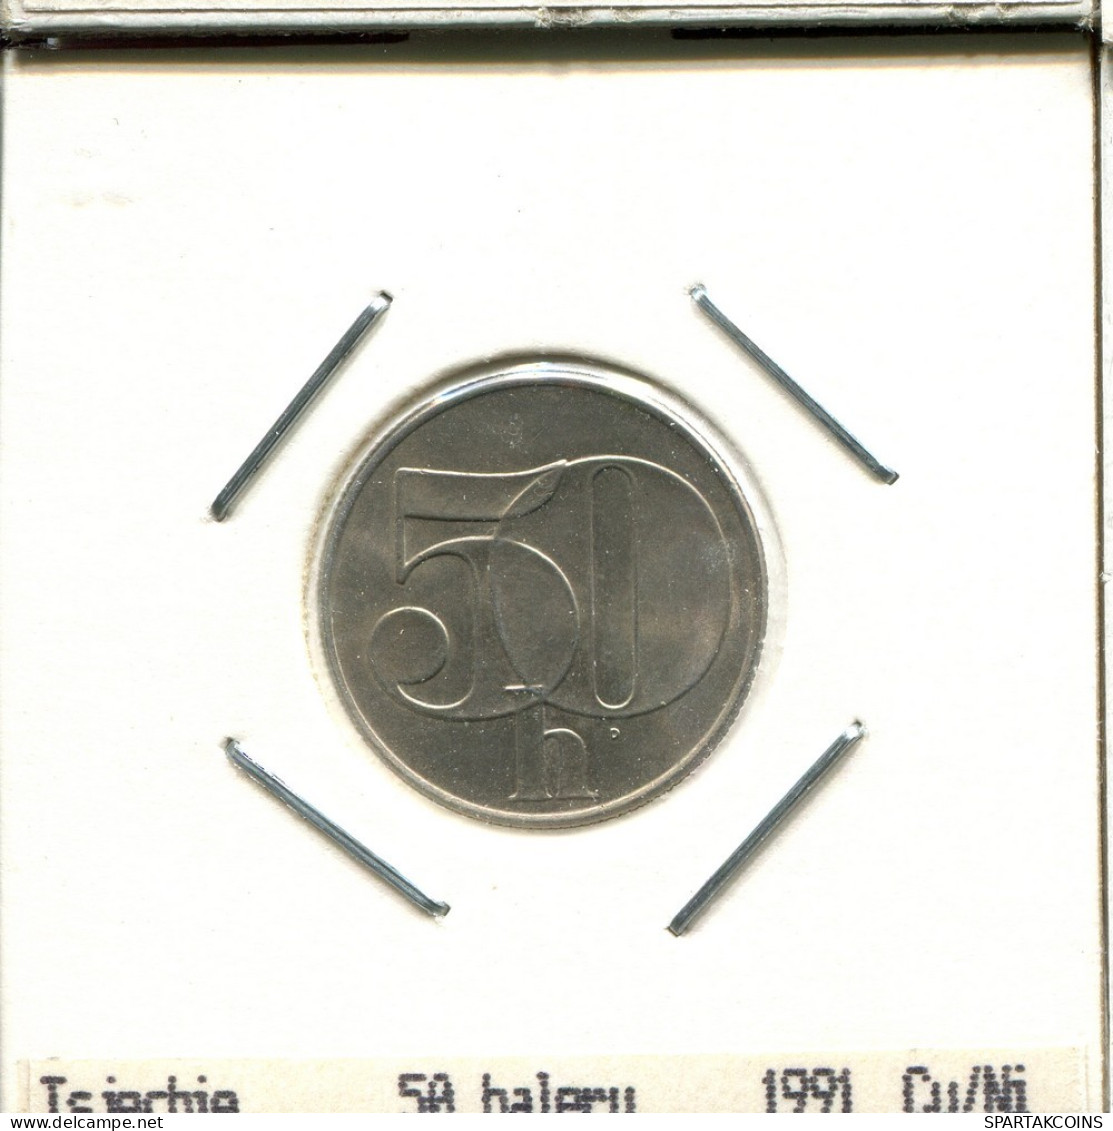 50 HALERU 1991 TSCHECHOSLOWAKEI CZECHOSLOWAKEI SLOVAKIA Münze #AS537.D.A - Checoslovaquia